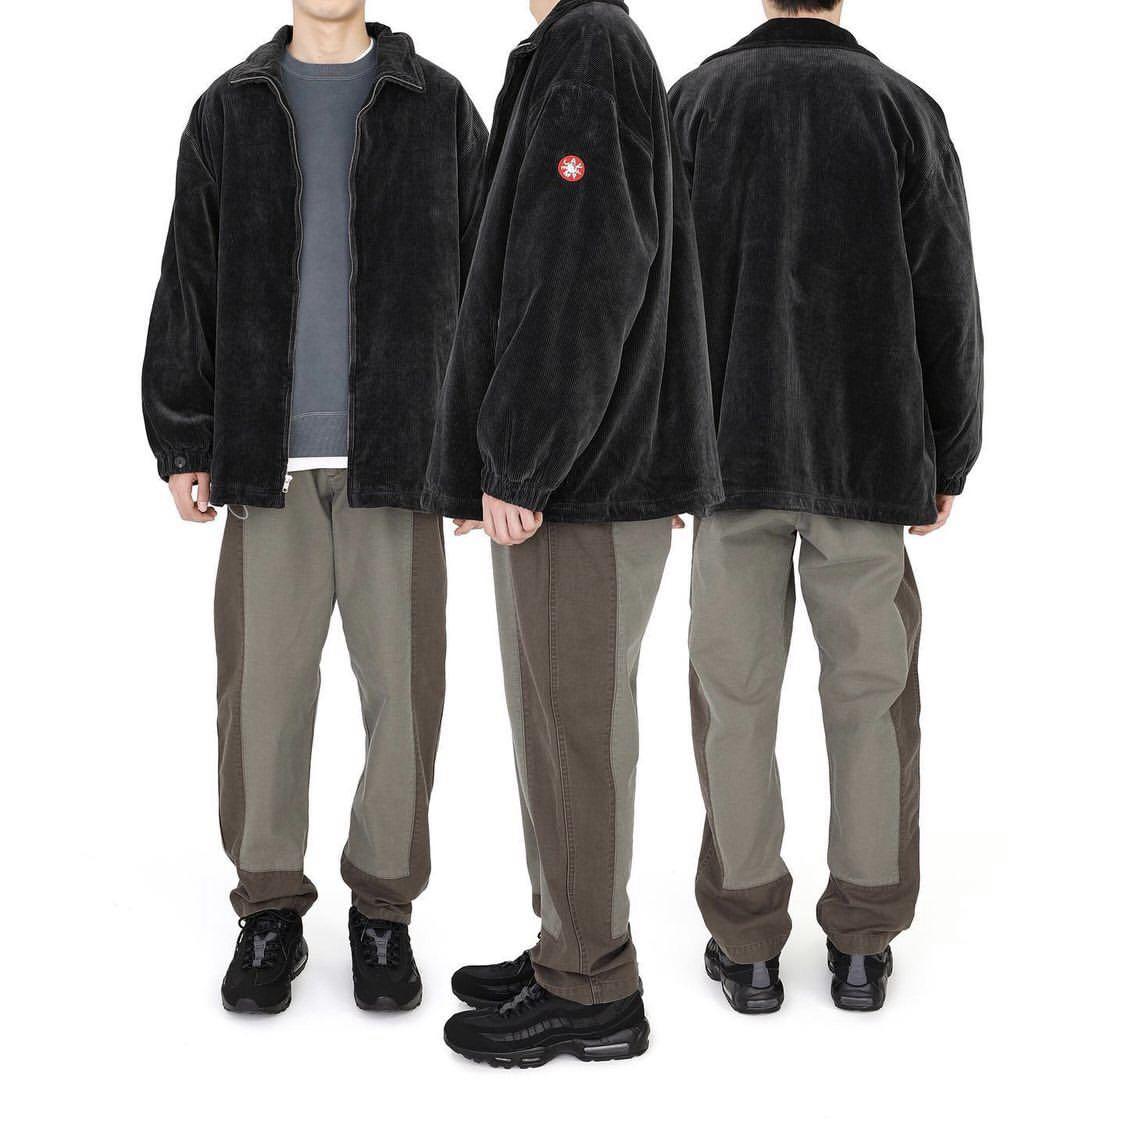 C.E cord zip warm jacket cavempt cav empt, 他的時尚, 外套及戶外衣服在旋轉拍賣